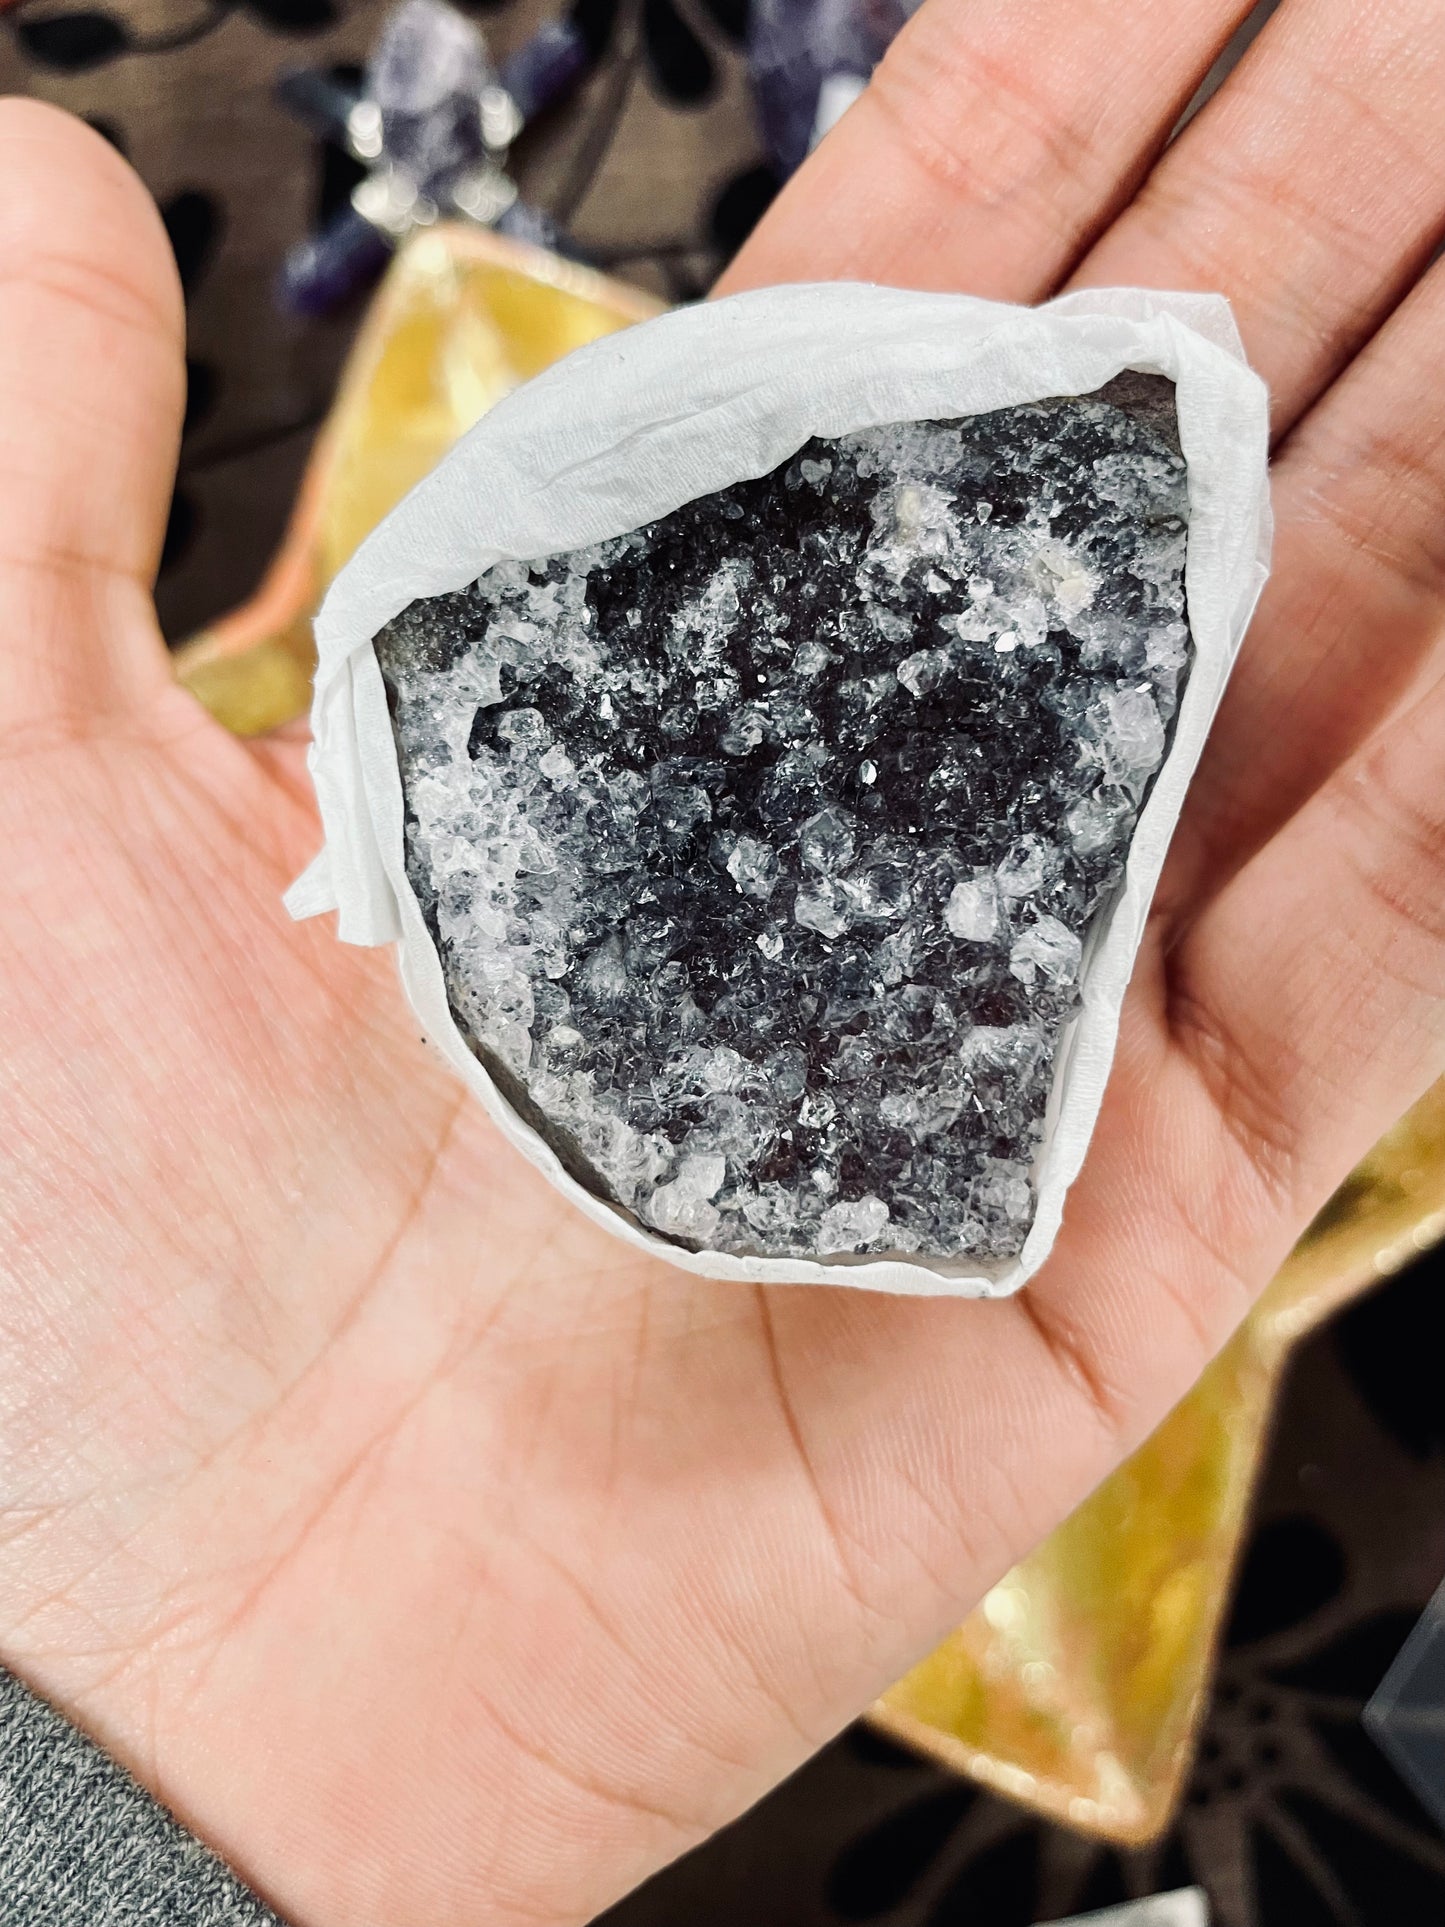 Amethyst Crystal Cluster